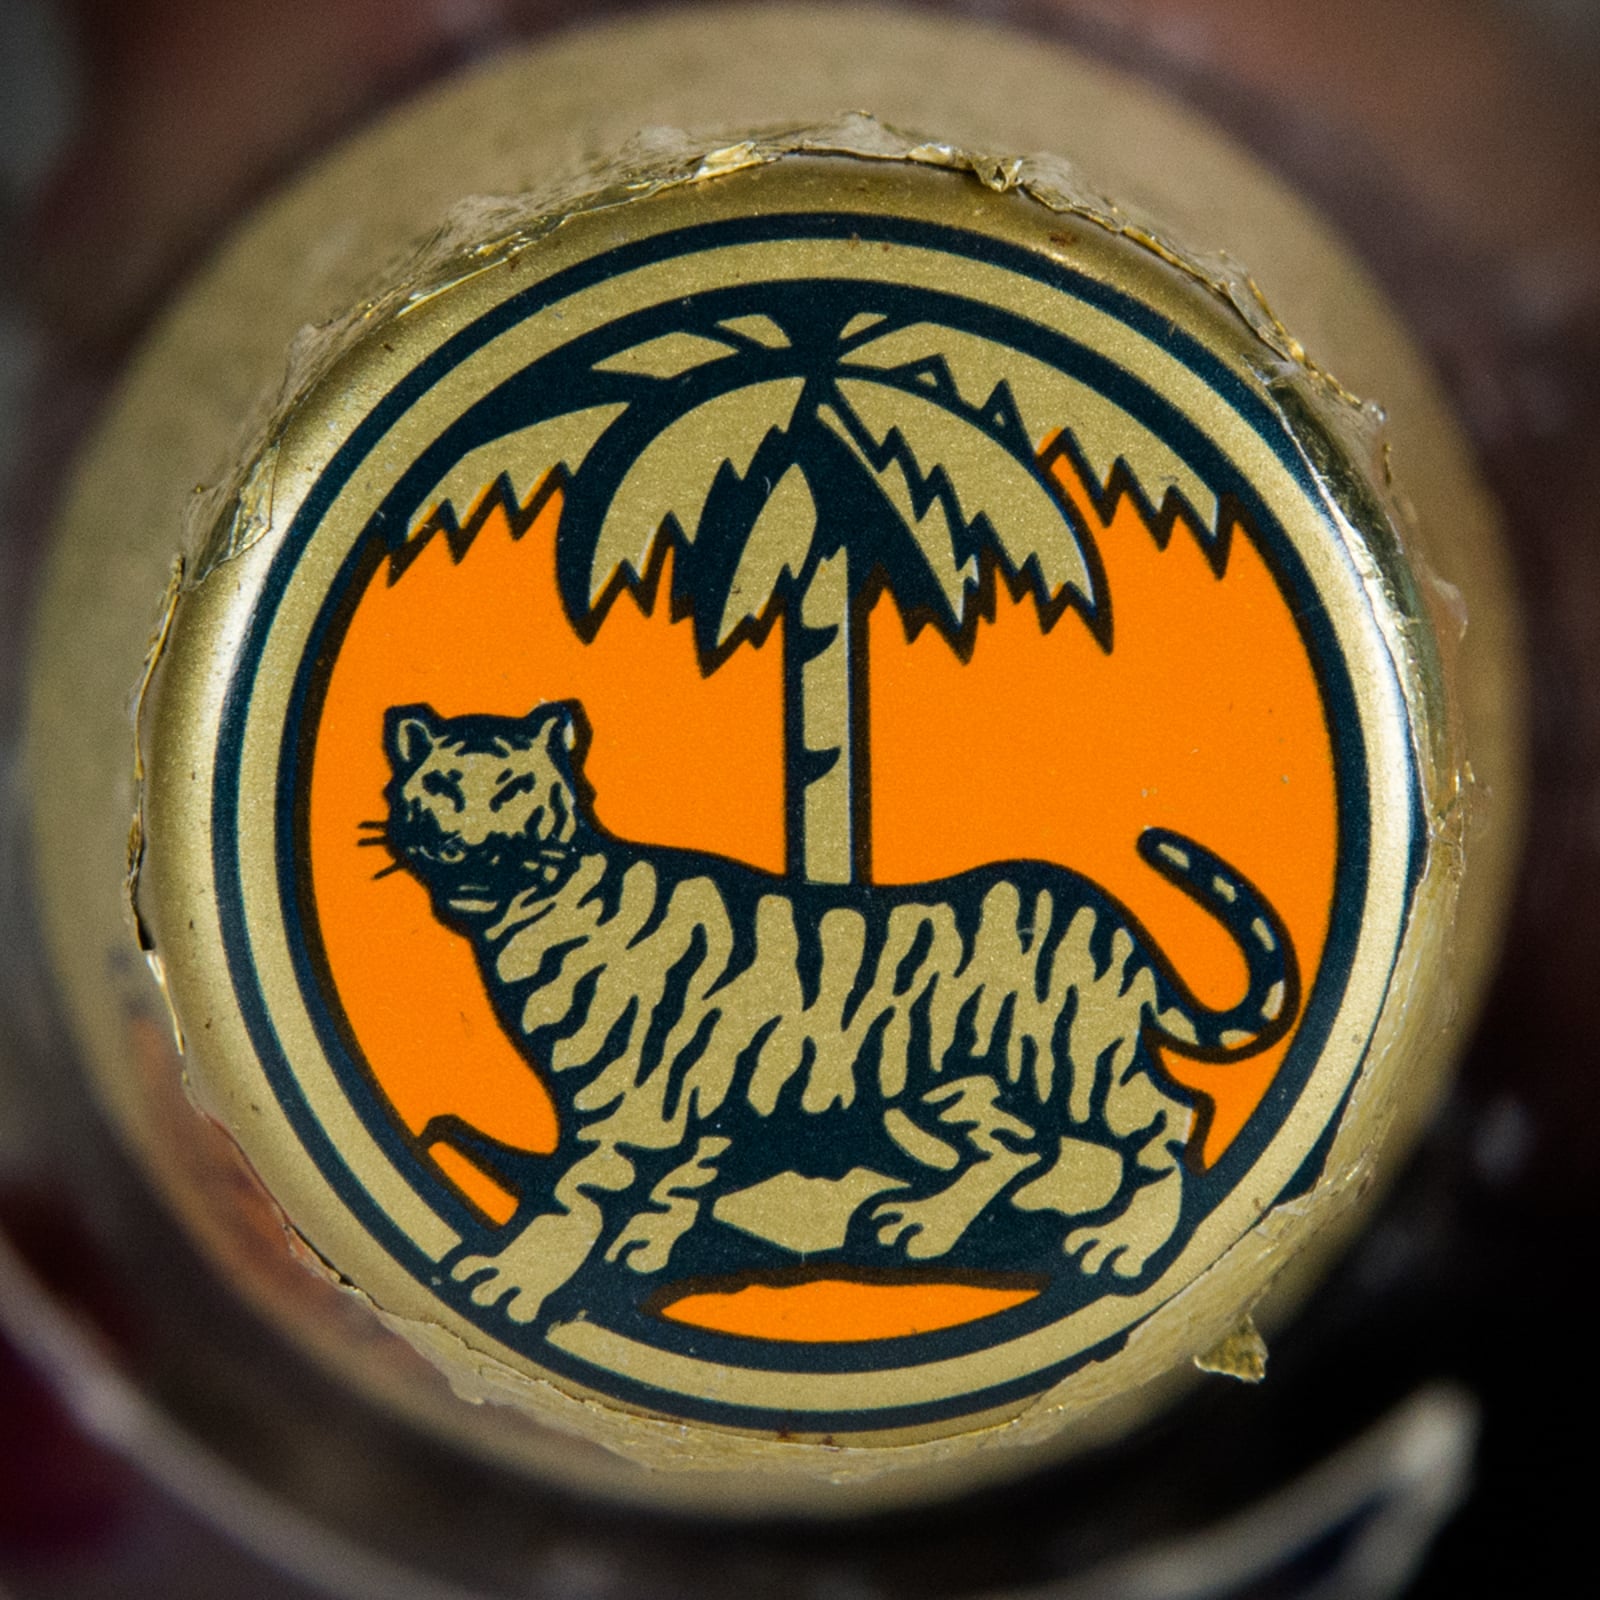 Tiger Gold Medal Lager Beer Vintage Bottle, 640 ml